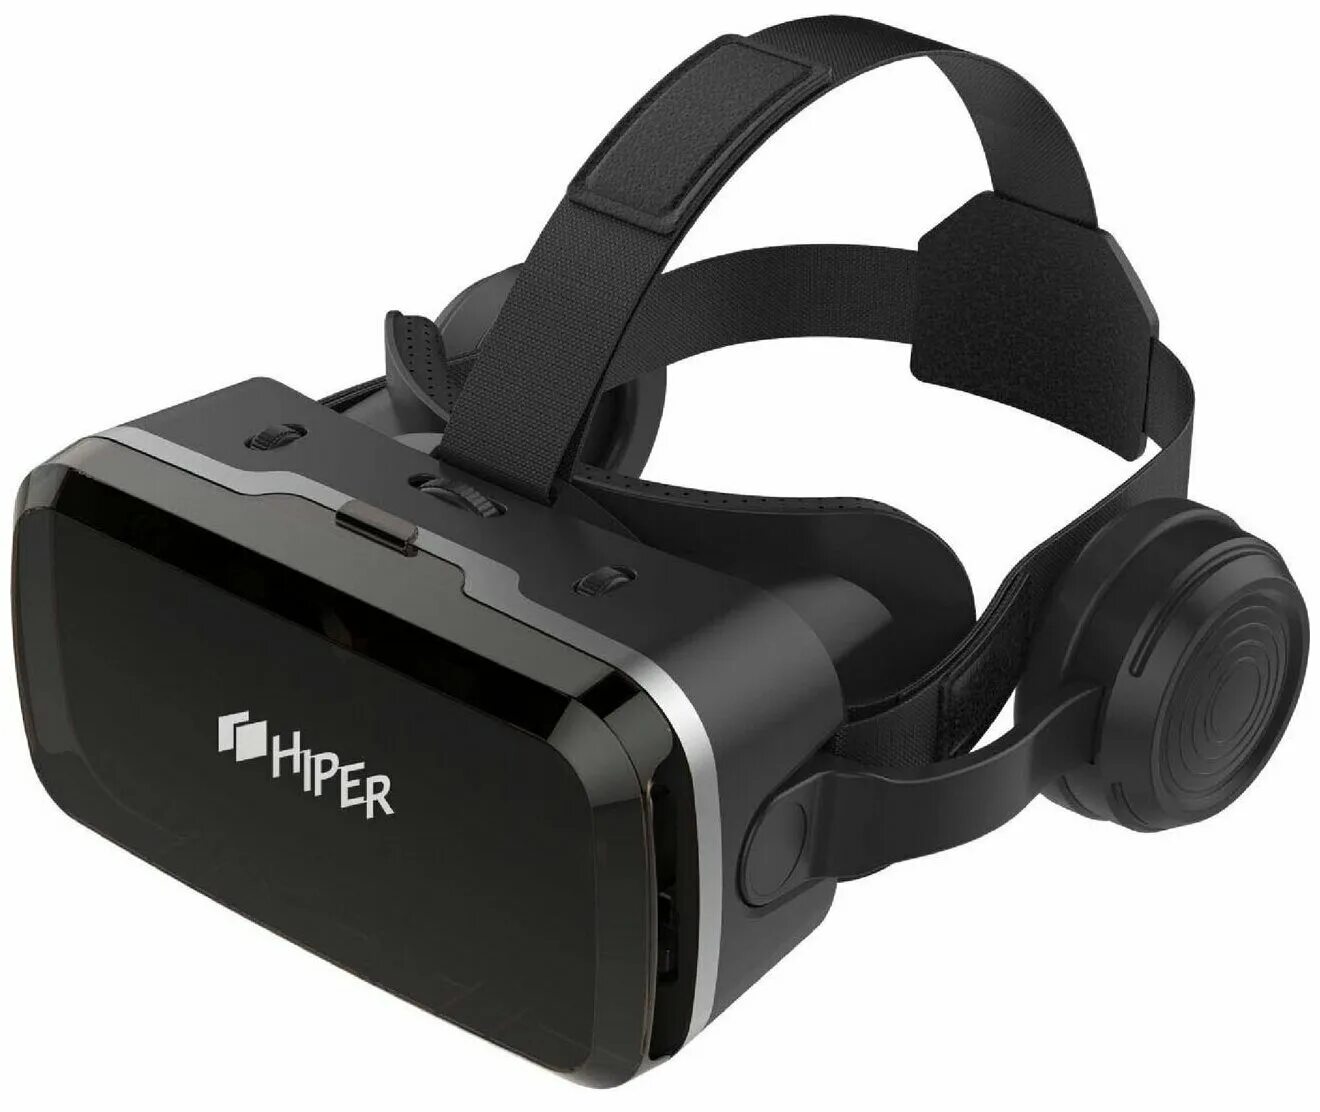 Vr очков hiper. Очки виртуальной реальности Hiper VR. Очки VR Hyper VR Max. Очки виртуальной реальности Hiper VRG Pro x7. Очки виртуальной реальности Hiper VR Neo, черный.